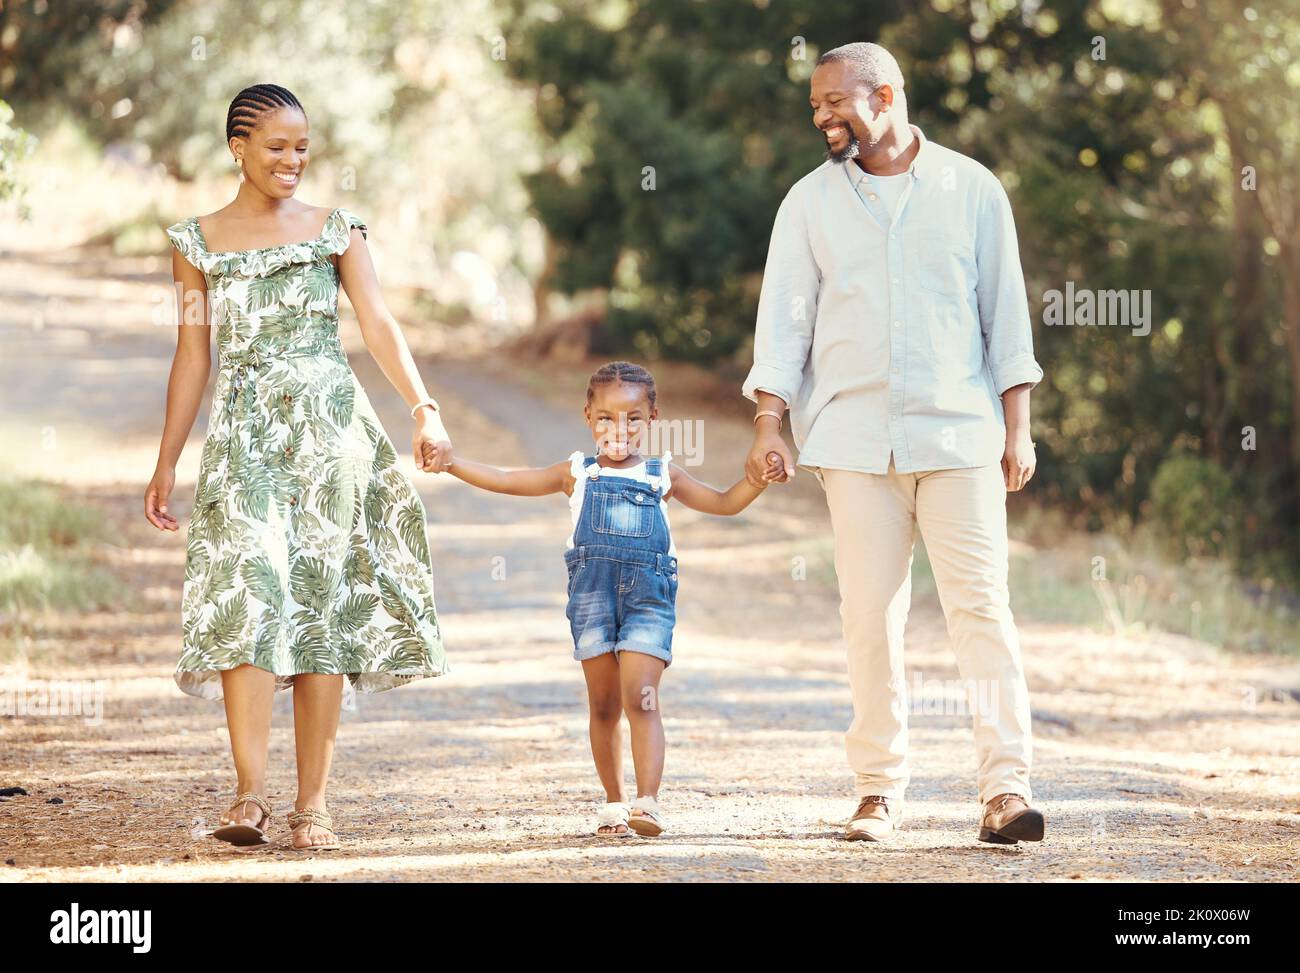 Famille noire, amour et parents actifs marchant avec leur enfant dans la nature pour une aventure et un plaisir en plein air. Bonne femme et homme africains Banque D'Images